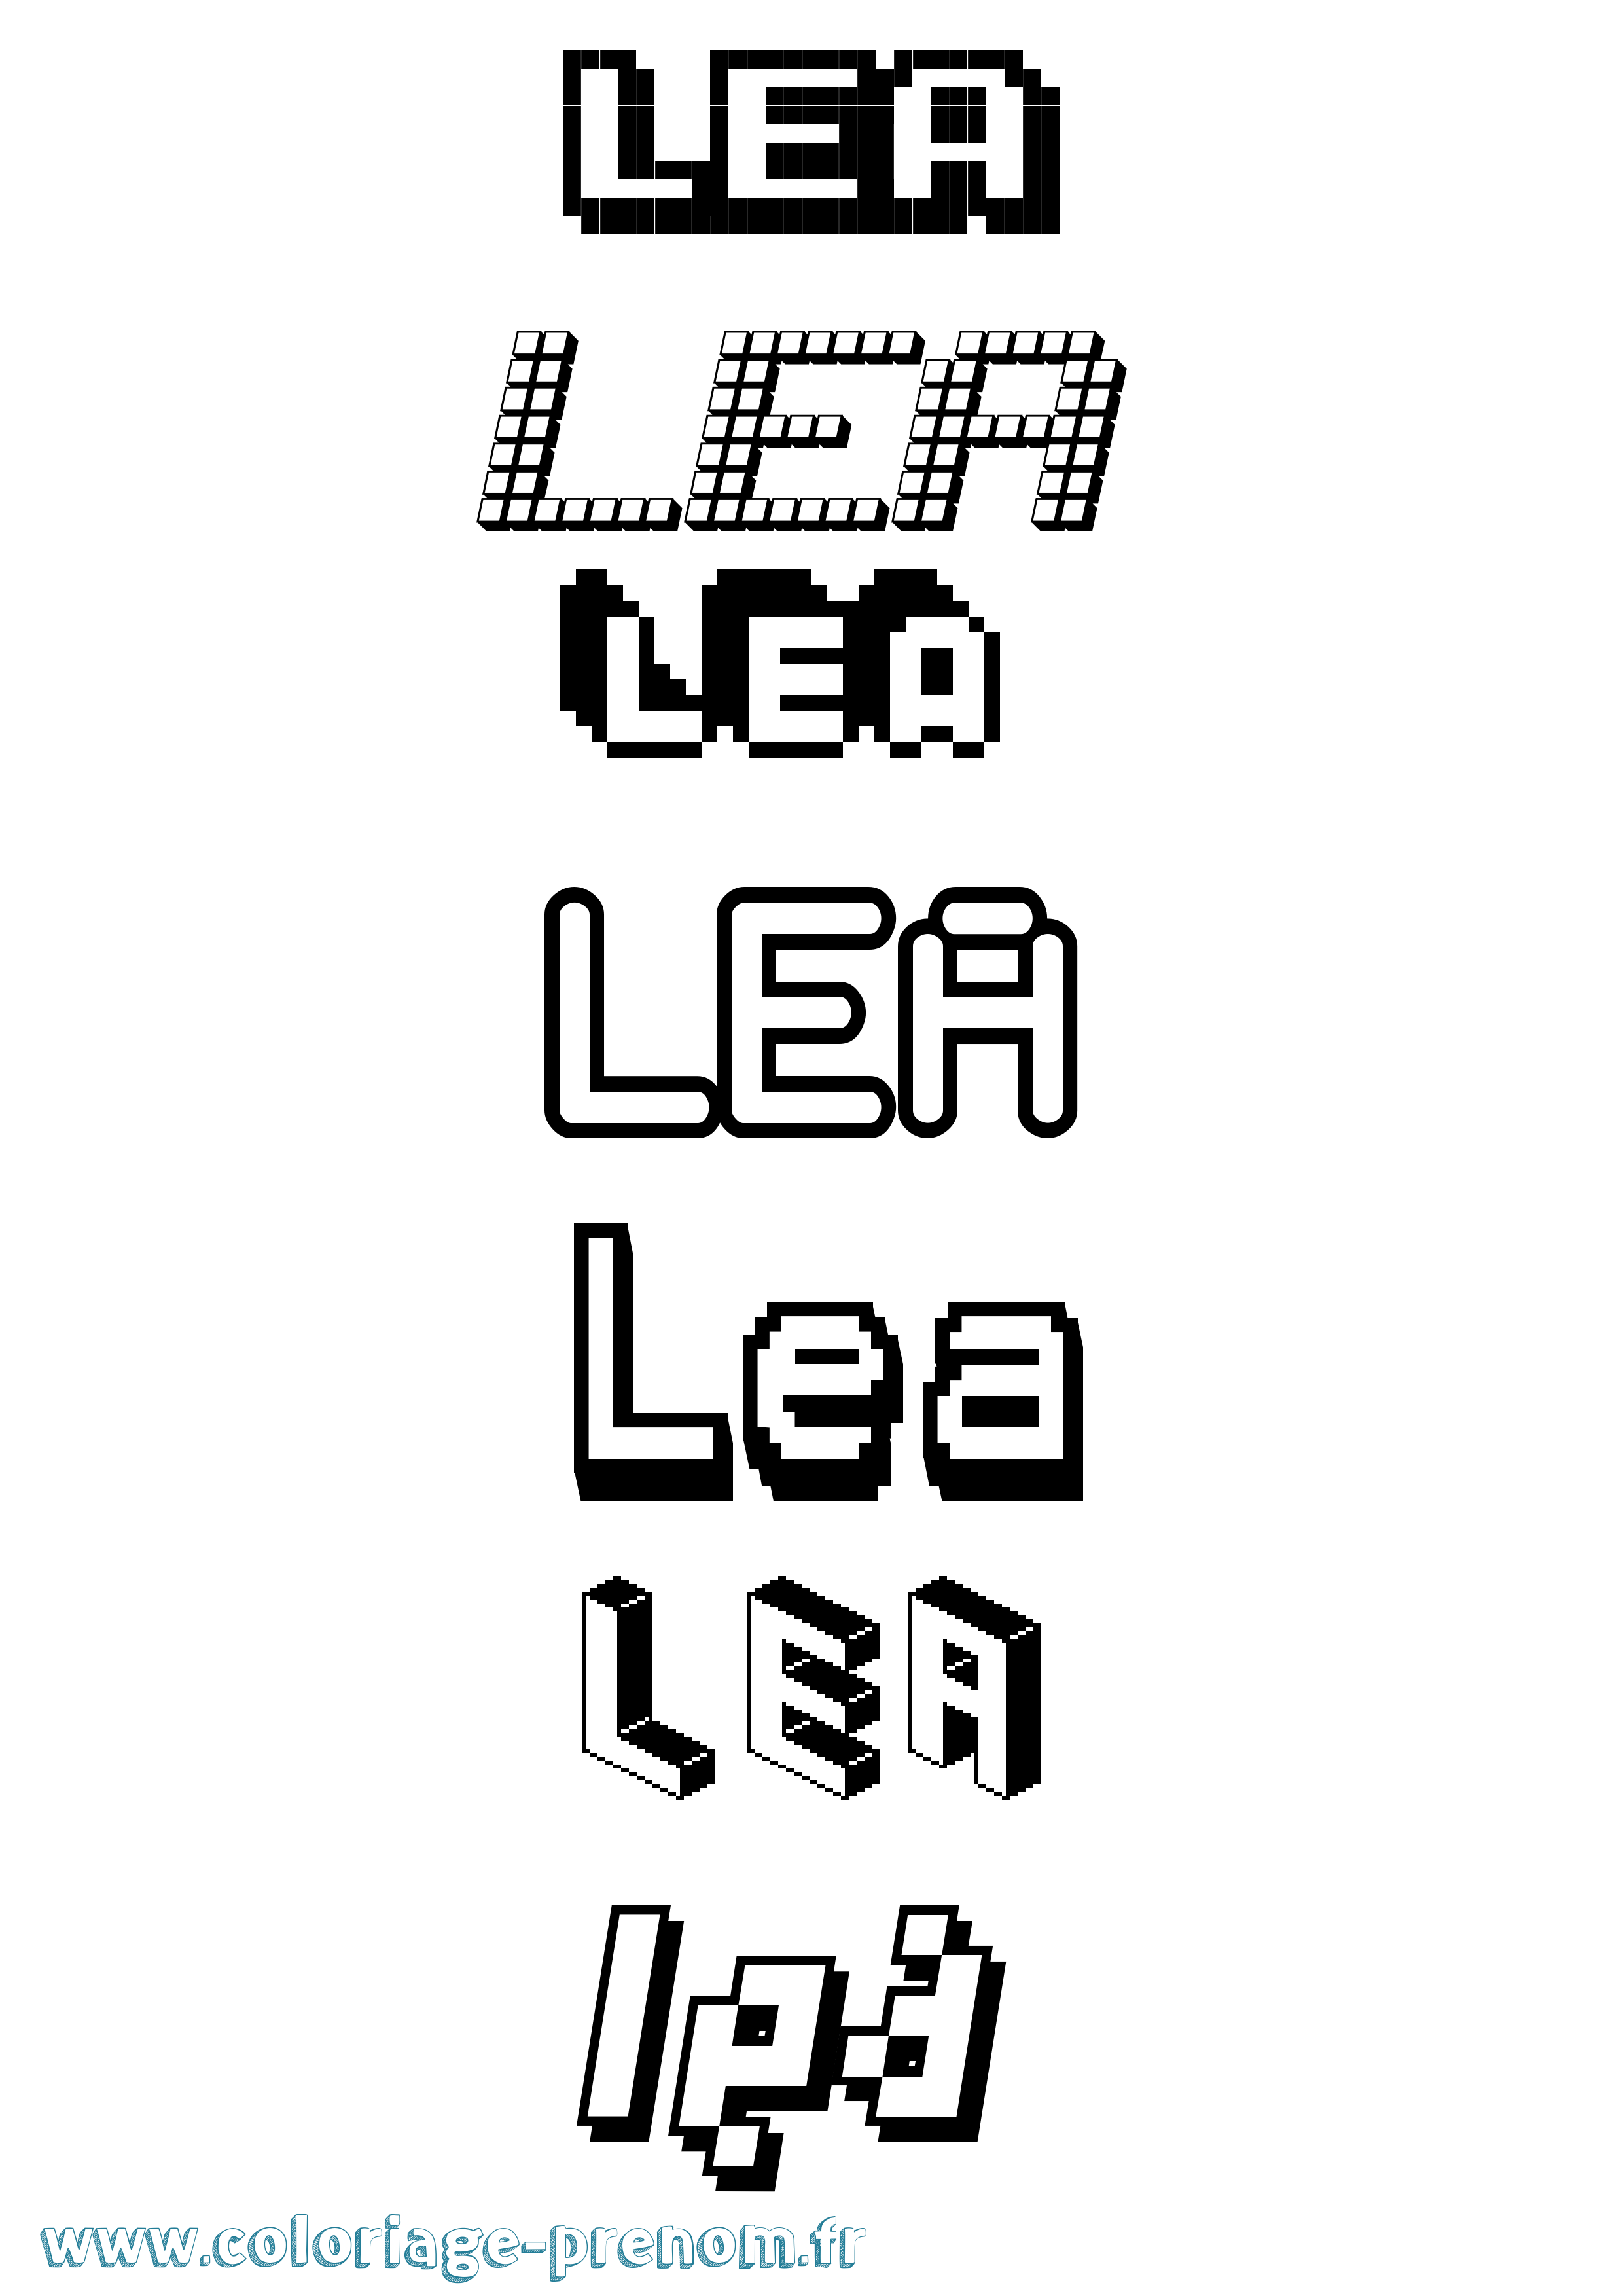 Coloriage prénom Lea Pixel